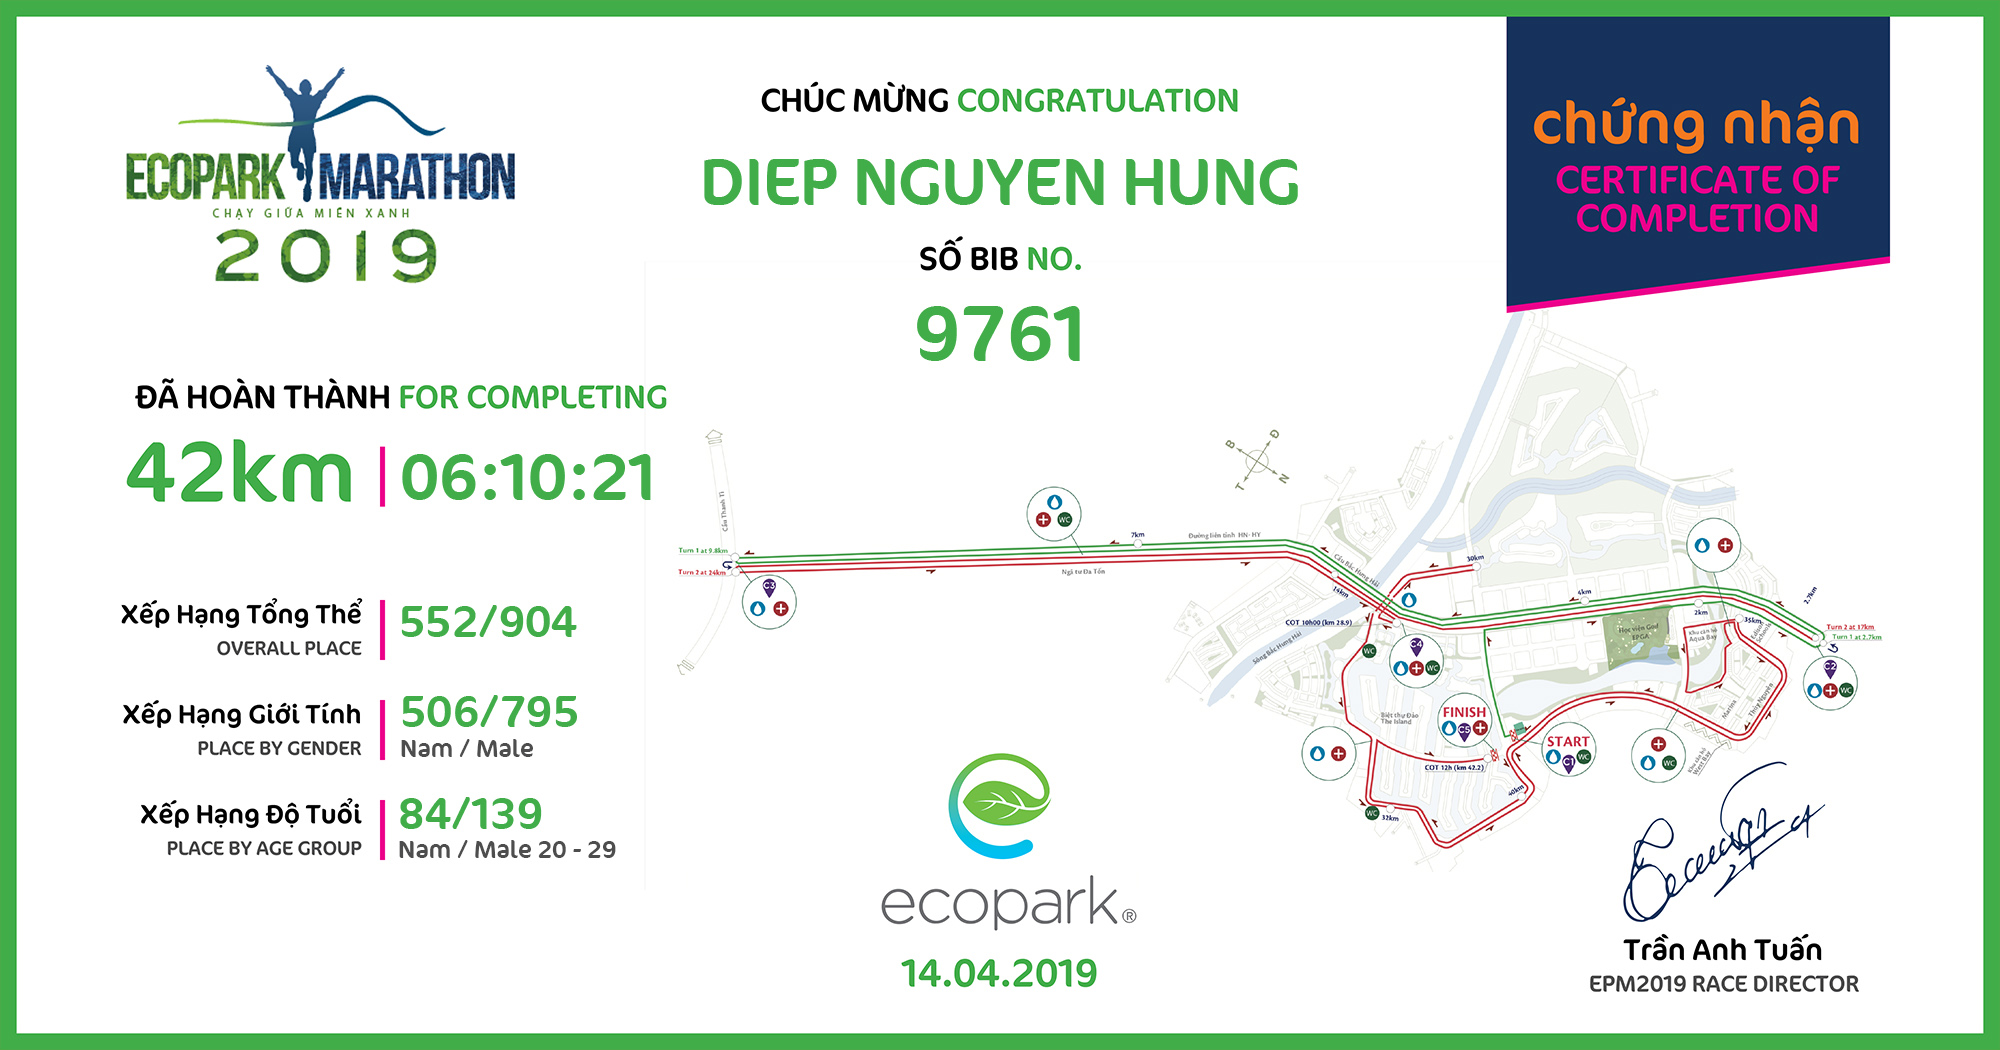 9761 - Diep Nguyen hung